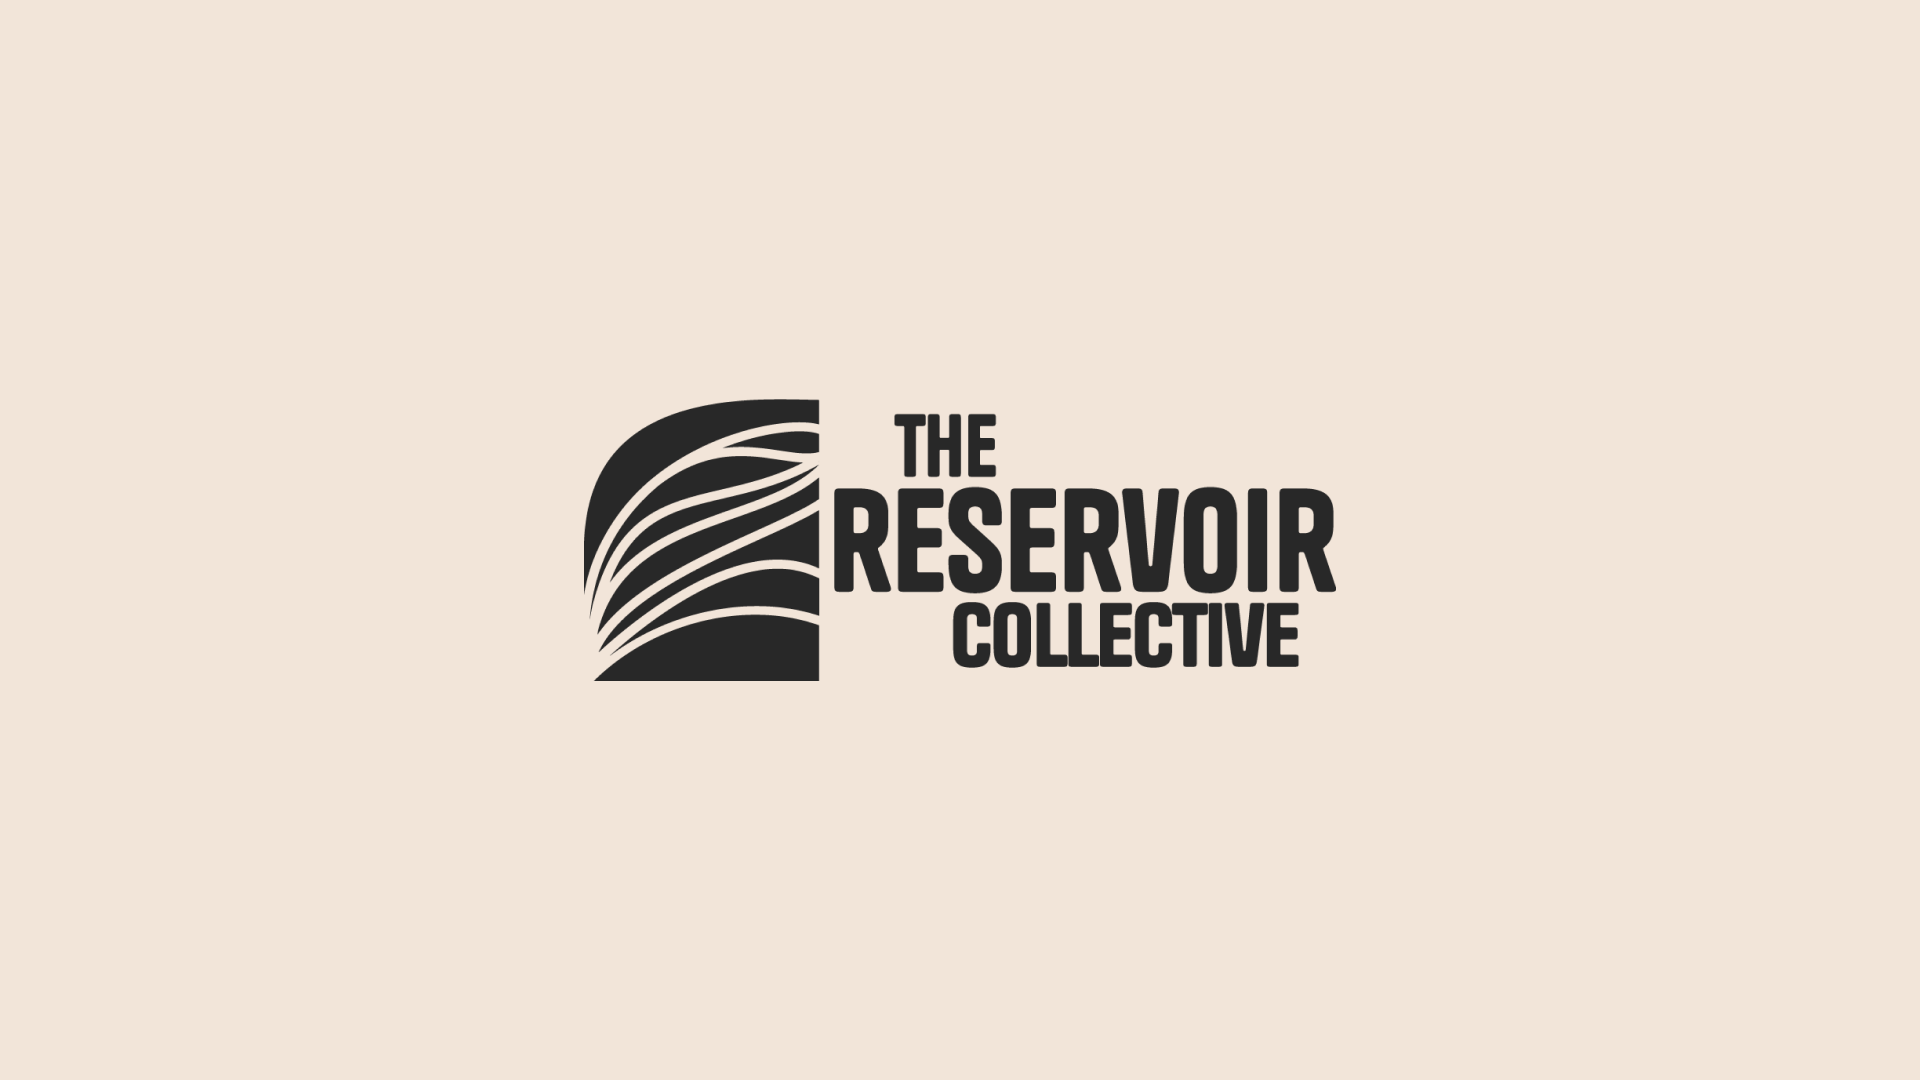 Reservoir branding image 1